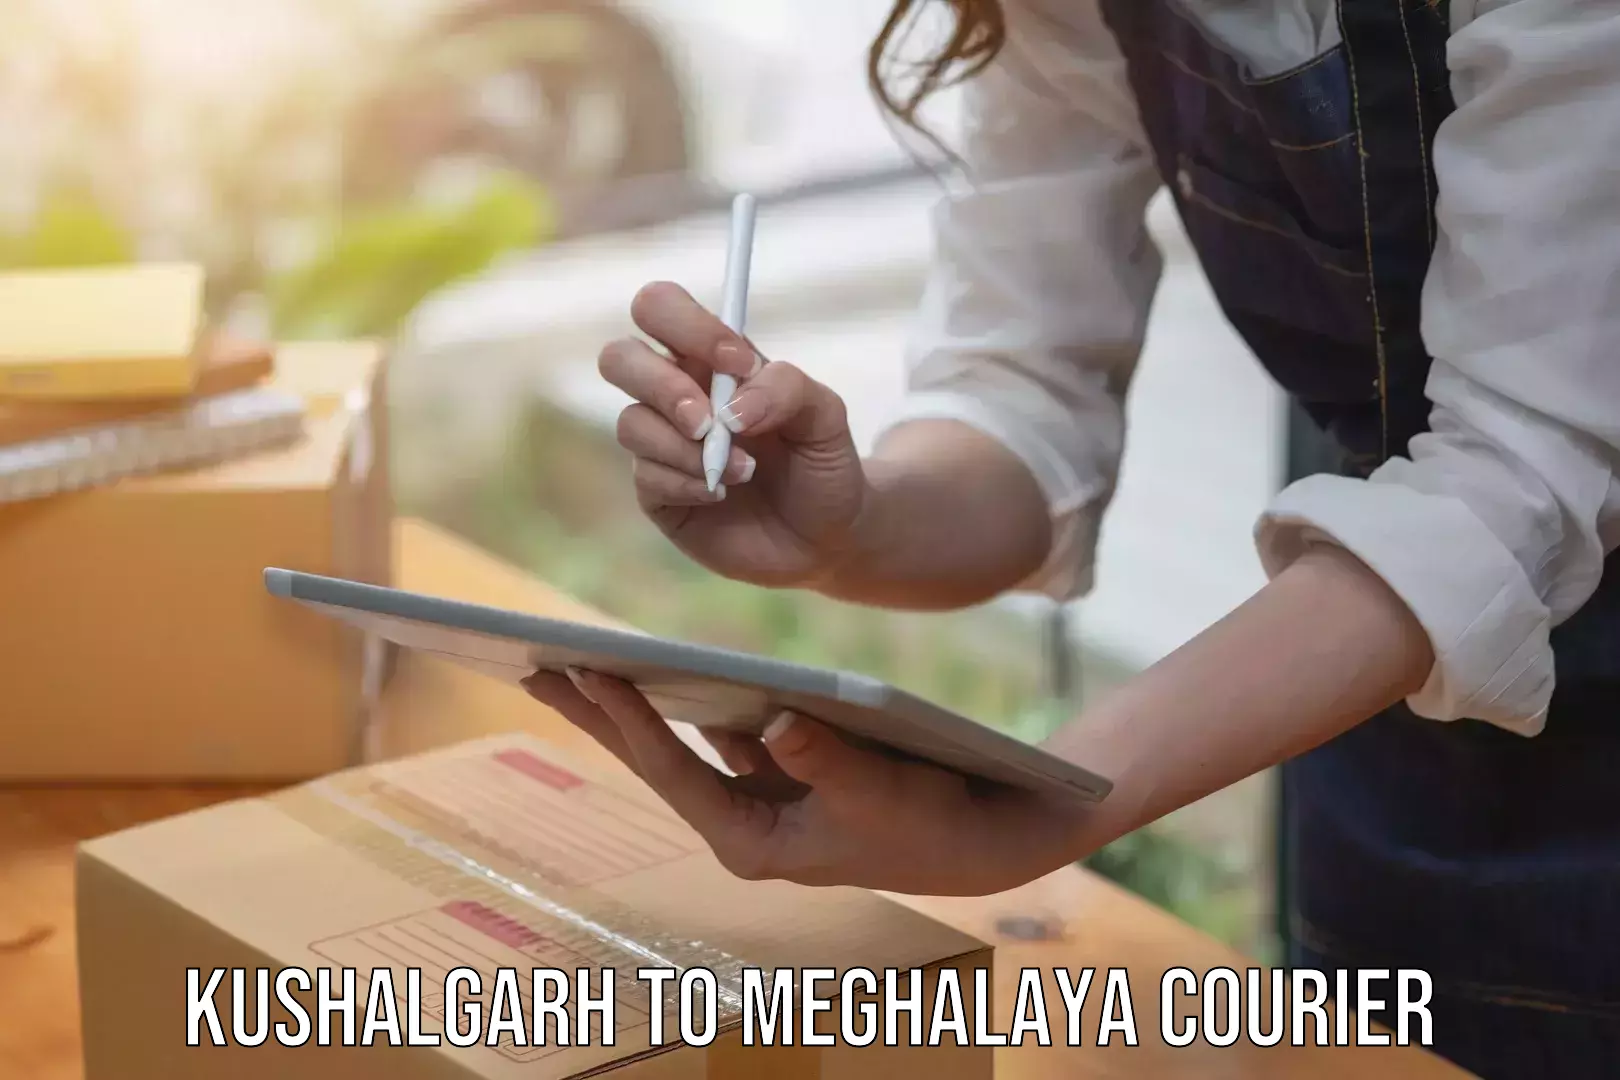 Nationwide courier service Kushalgarh to NIT Meghalaya